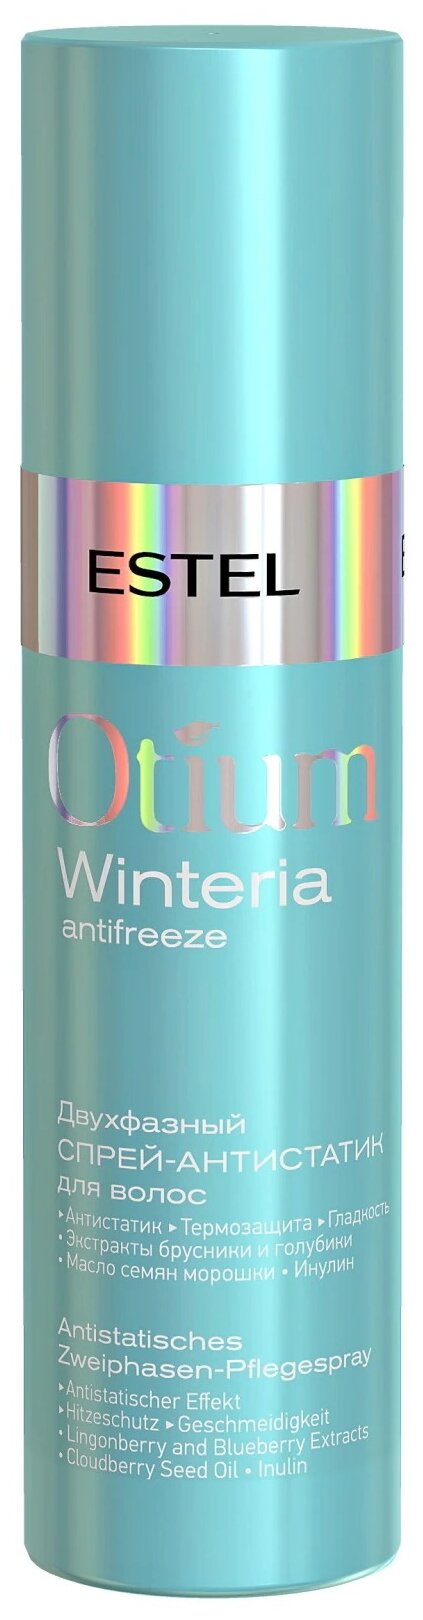 ESTEL Двухфазный спрей-антистатик для волос Otium Winteria, 200 мл, аэрозоль